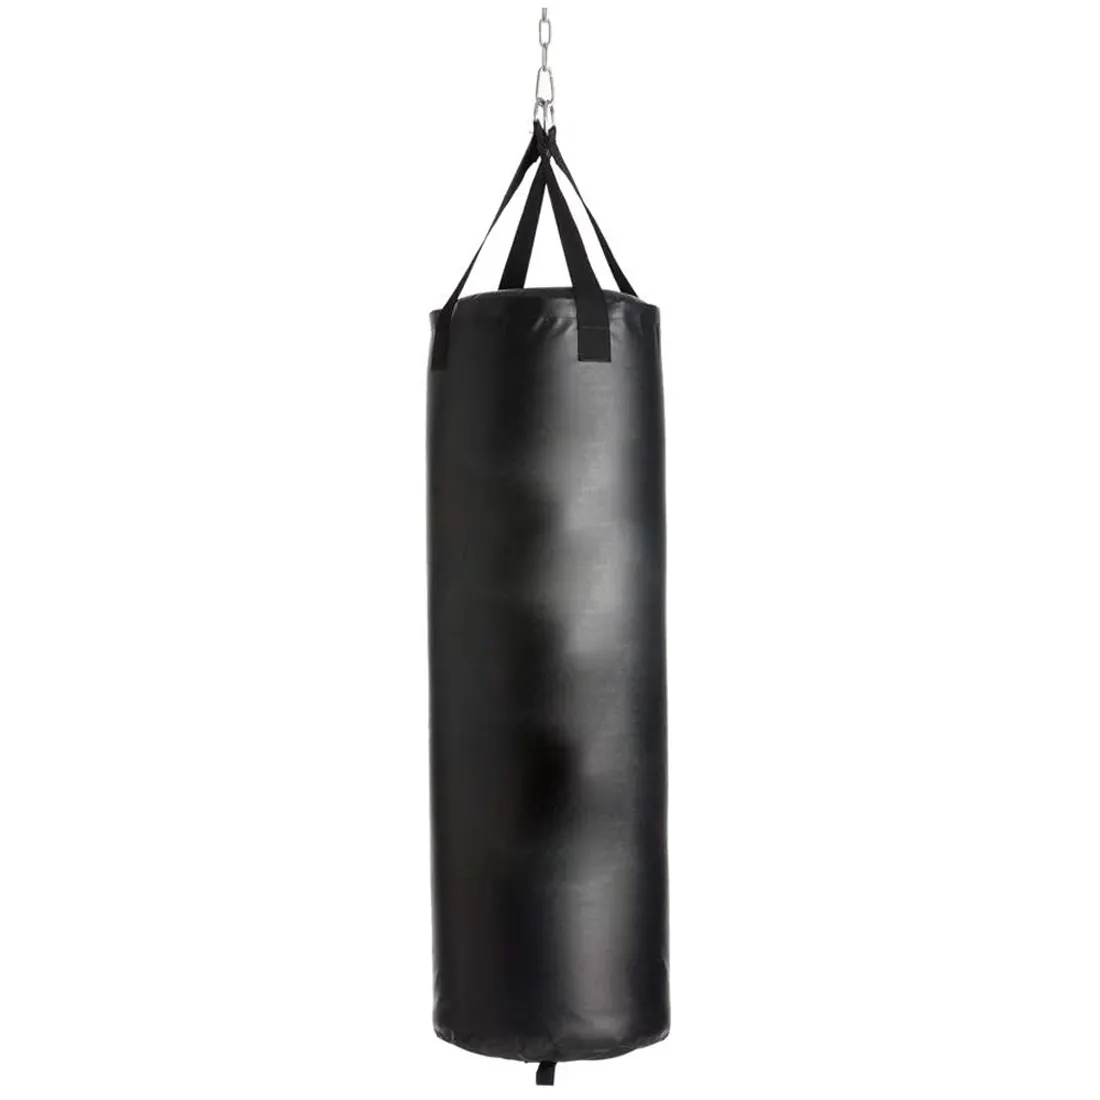 Ağır boks kullanımı ev Fitness kanca asılı Kick boks torbası boks eğitim mücadele Karate yumruk kum torbası